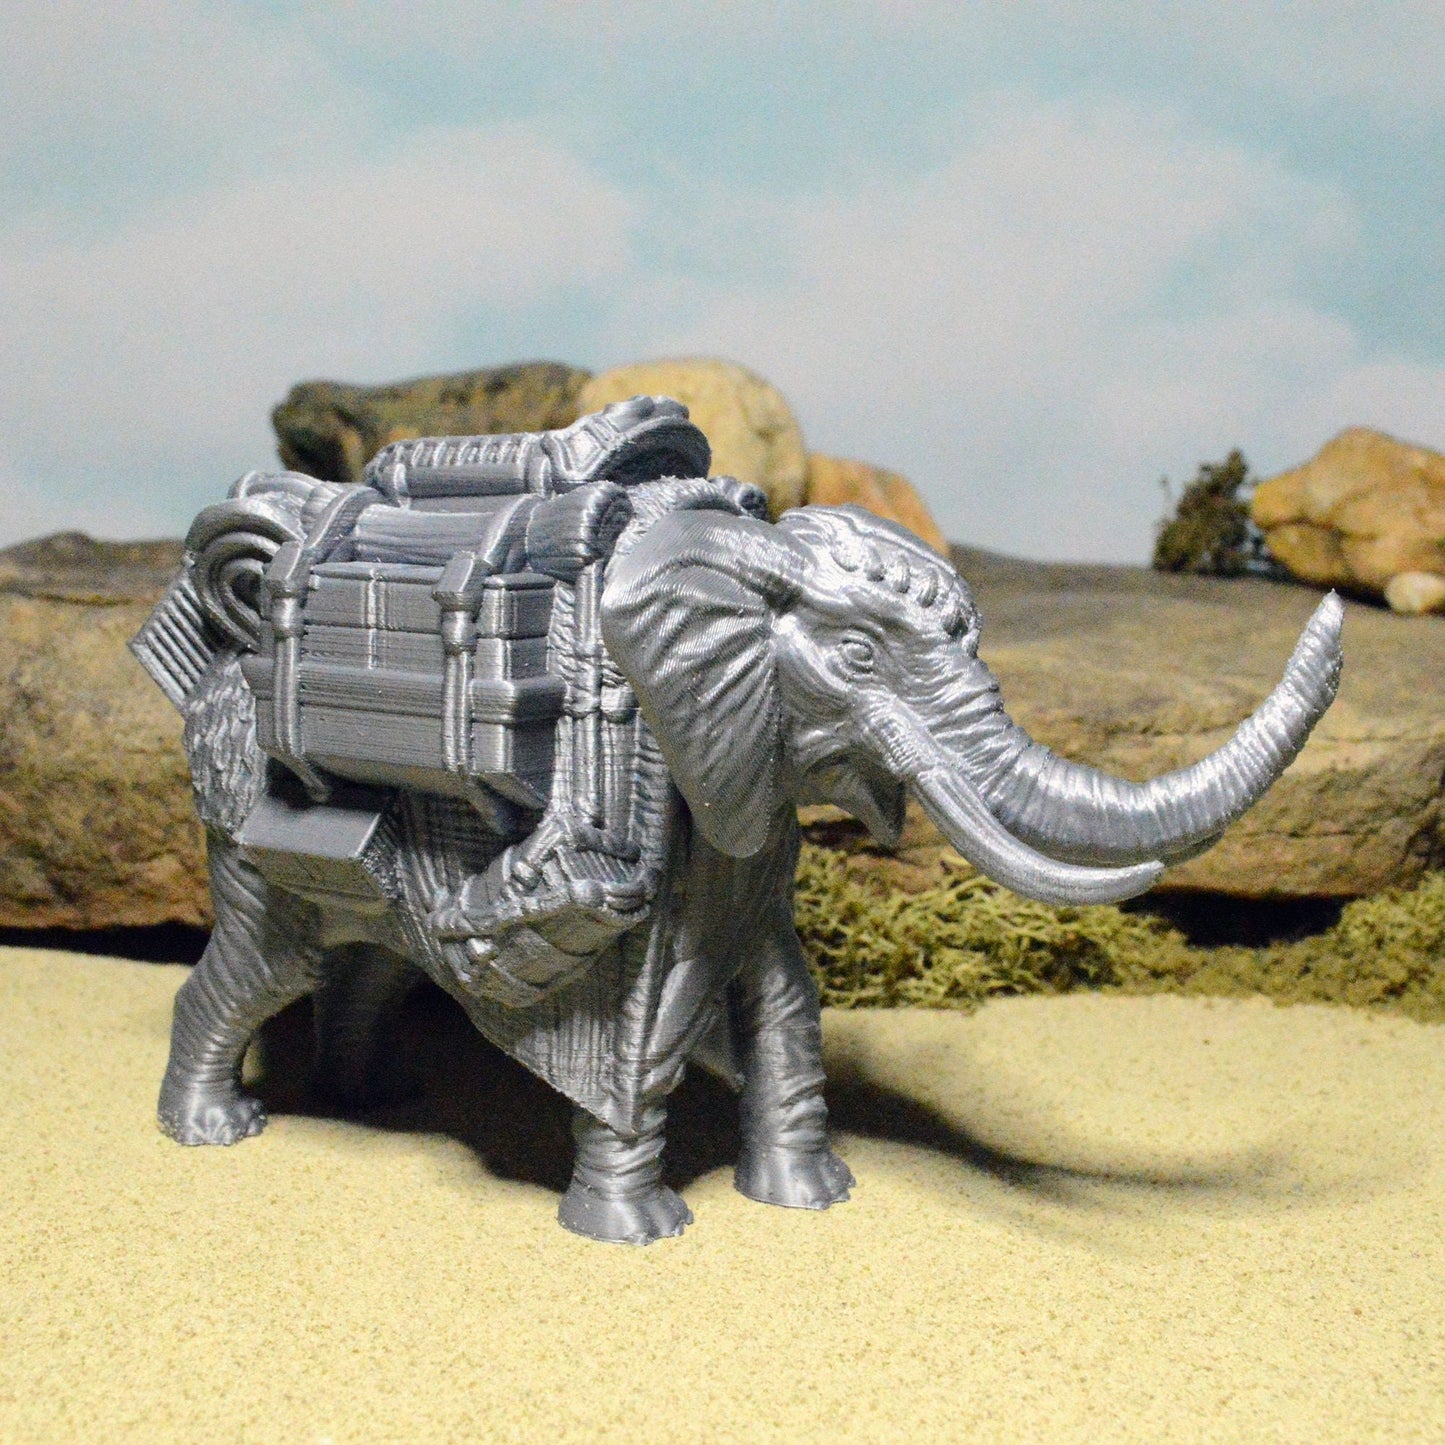 Miniature Pack Elephant 15mm 28mm 32mm for D&D Terrain, DnD Pathfinder Desert, Empire of Scorching Sands